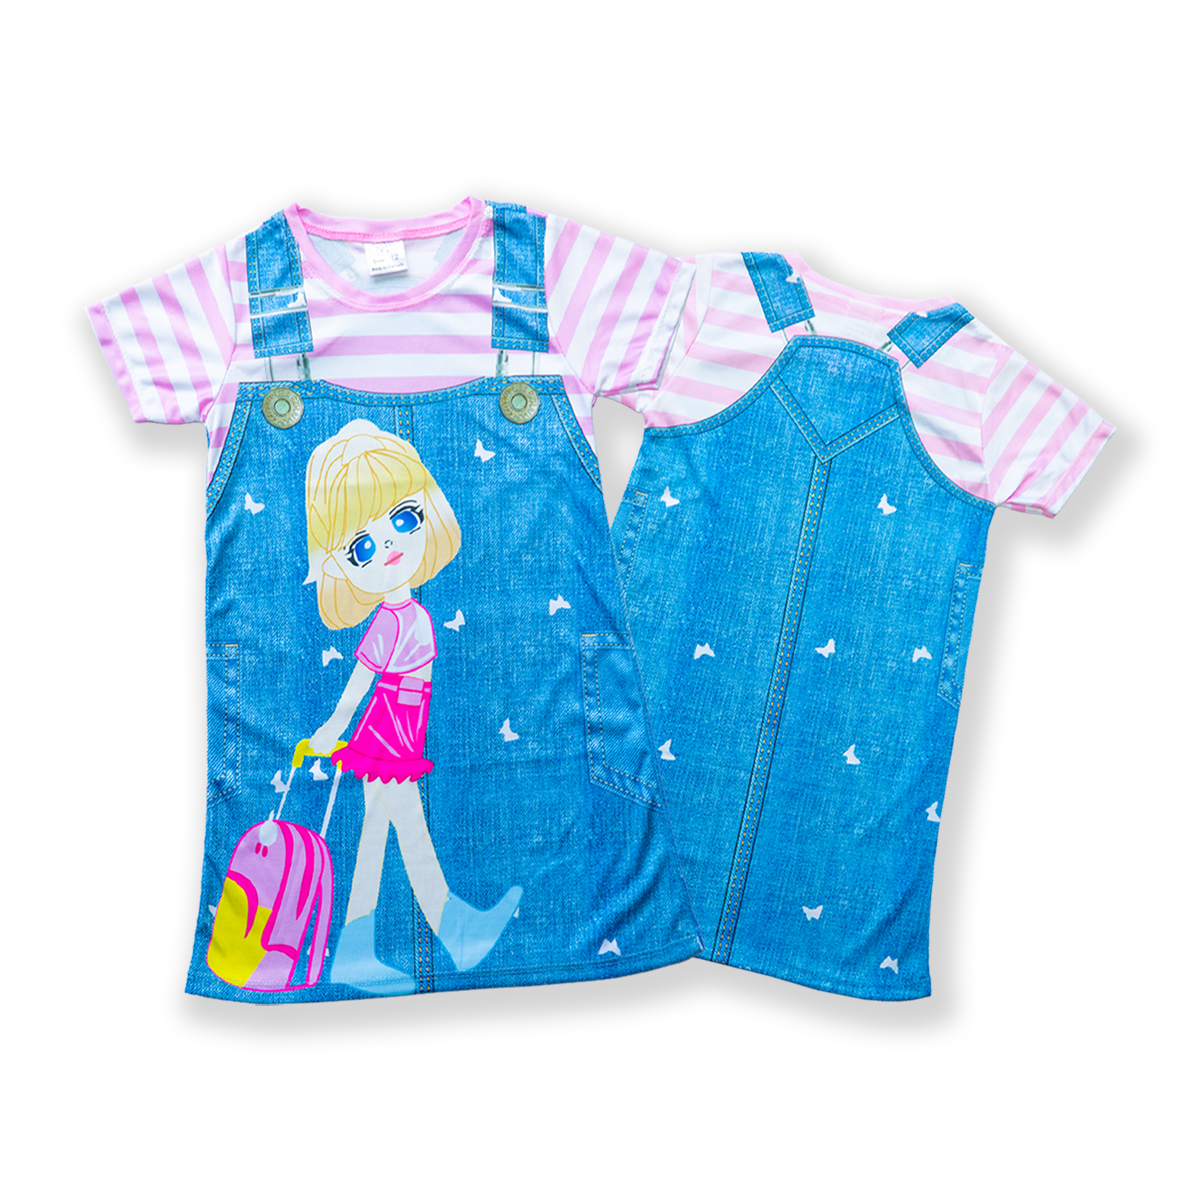 Váy bé gái giả yếm in hình 3D họa tiết vải thun hiệu MIMYKID, đầm trẻ em - LMTK-V03H1 - Giao màu ngẫu nhiên